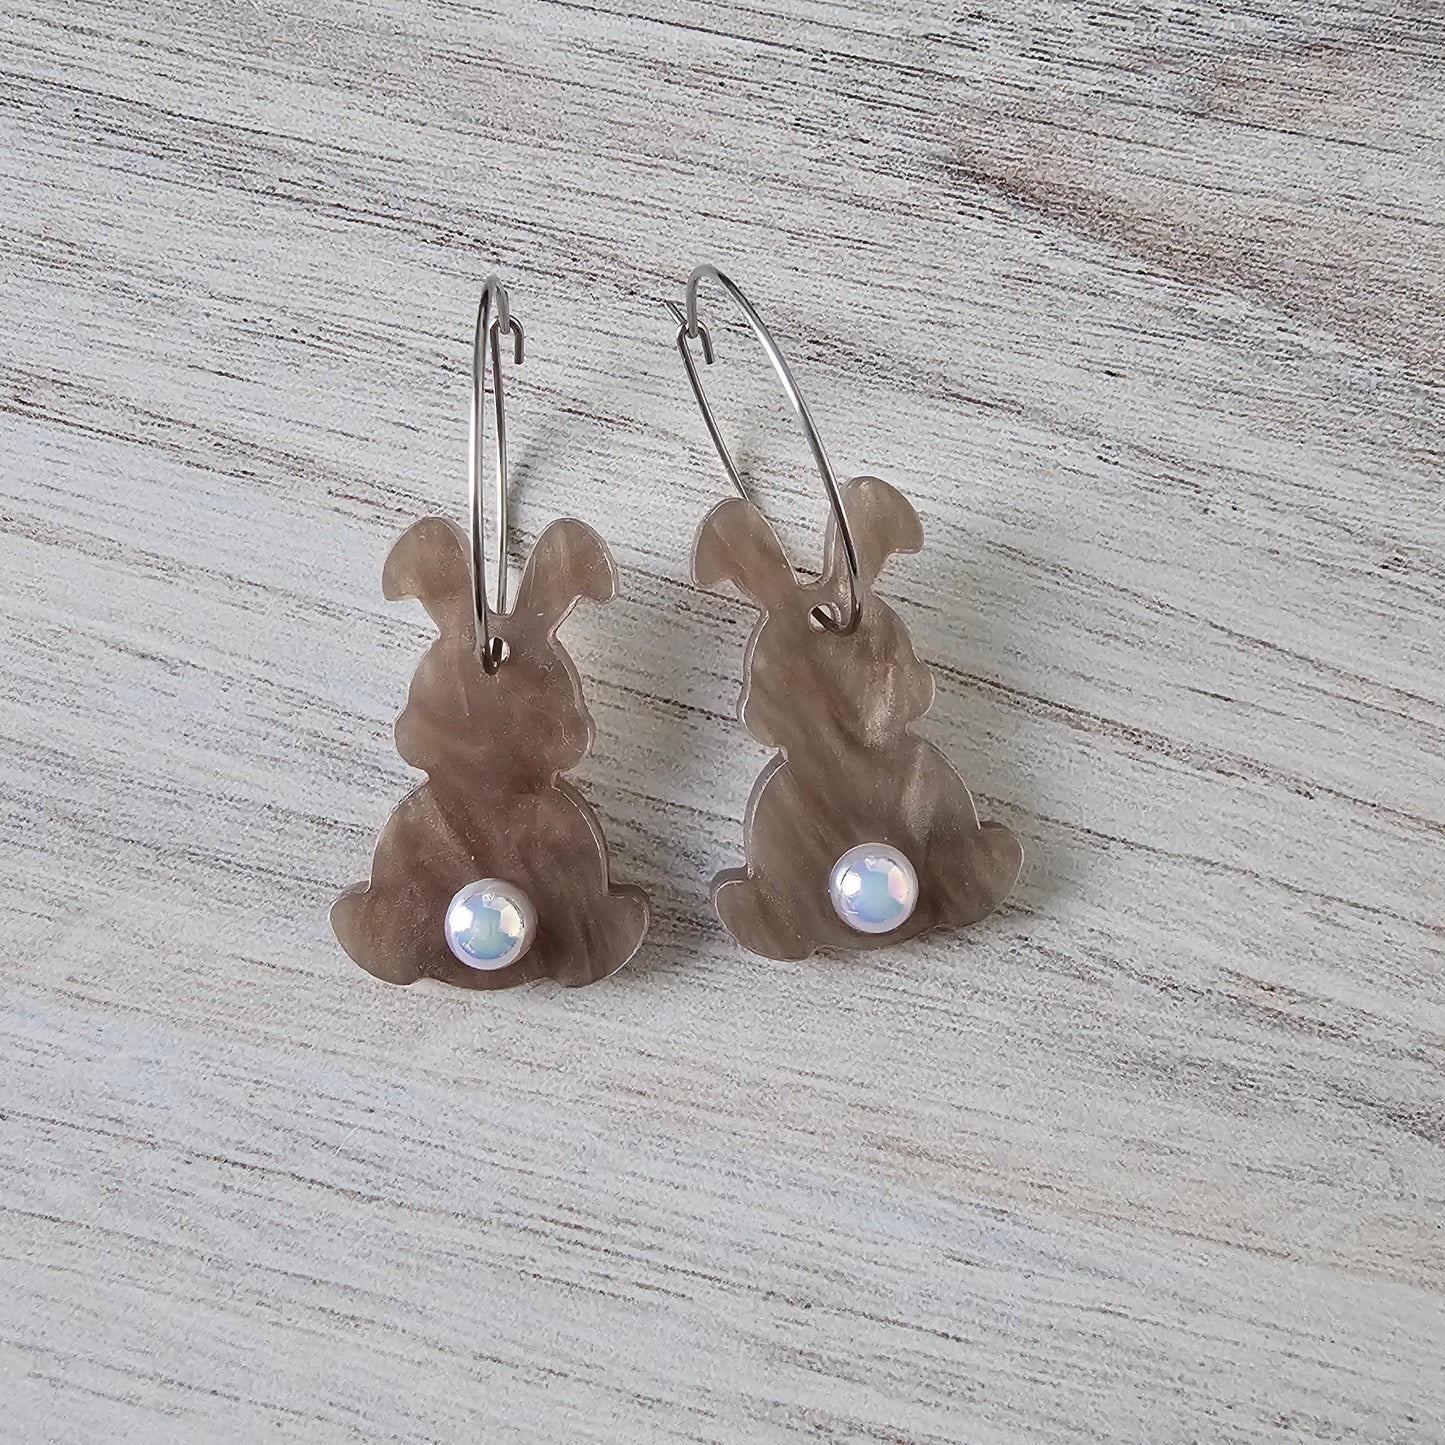 Bunny Tail Earrings